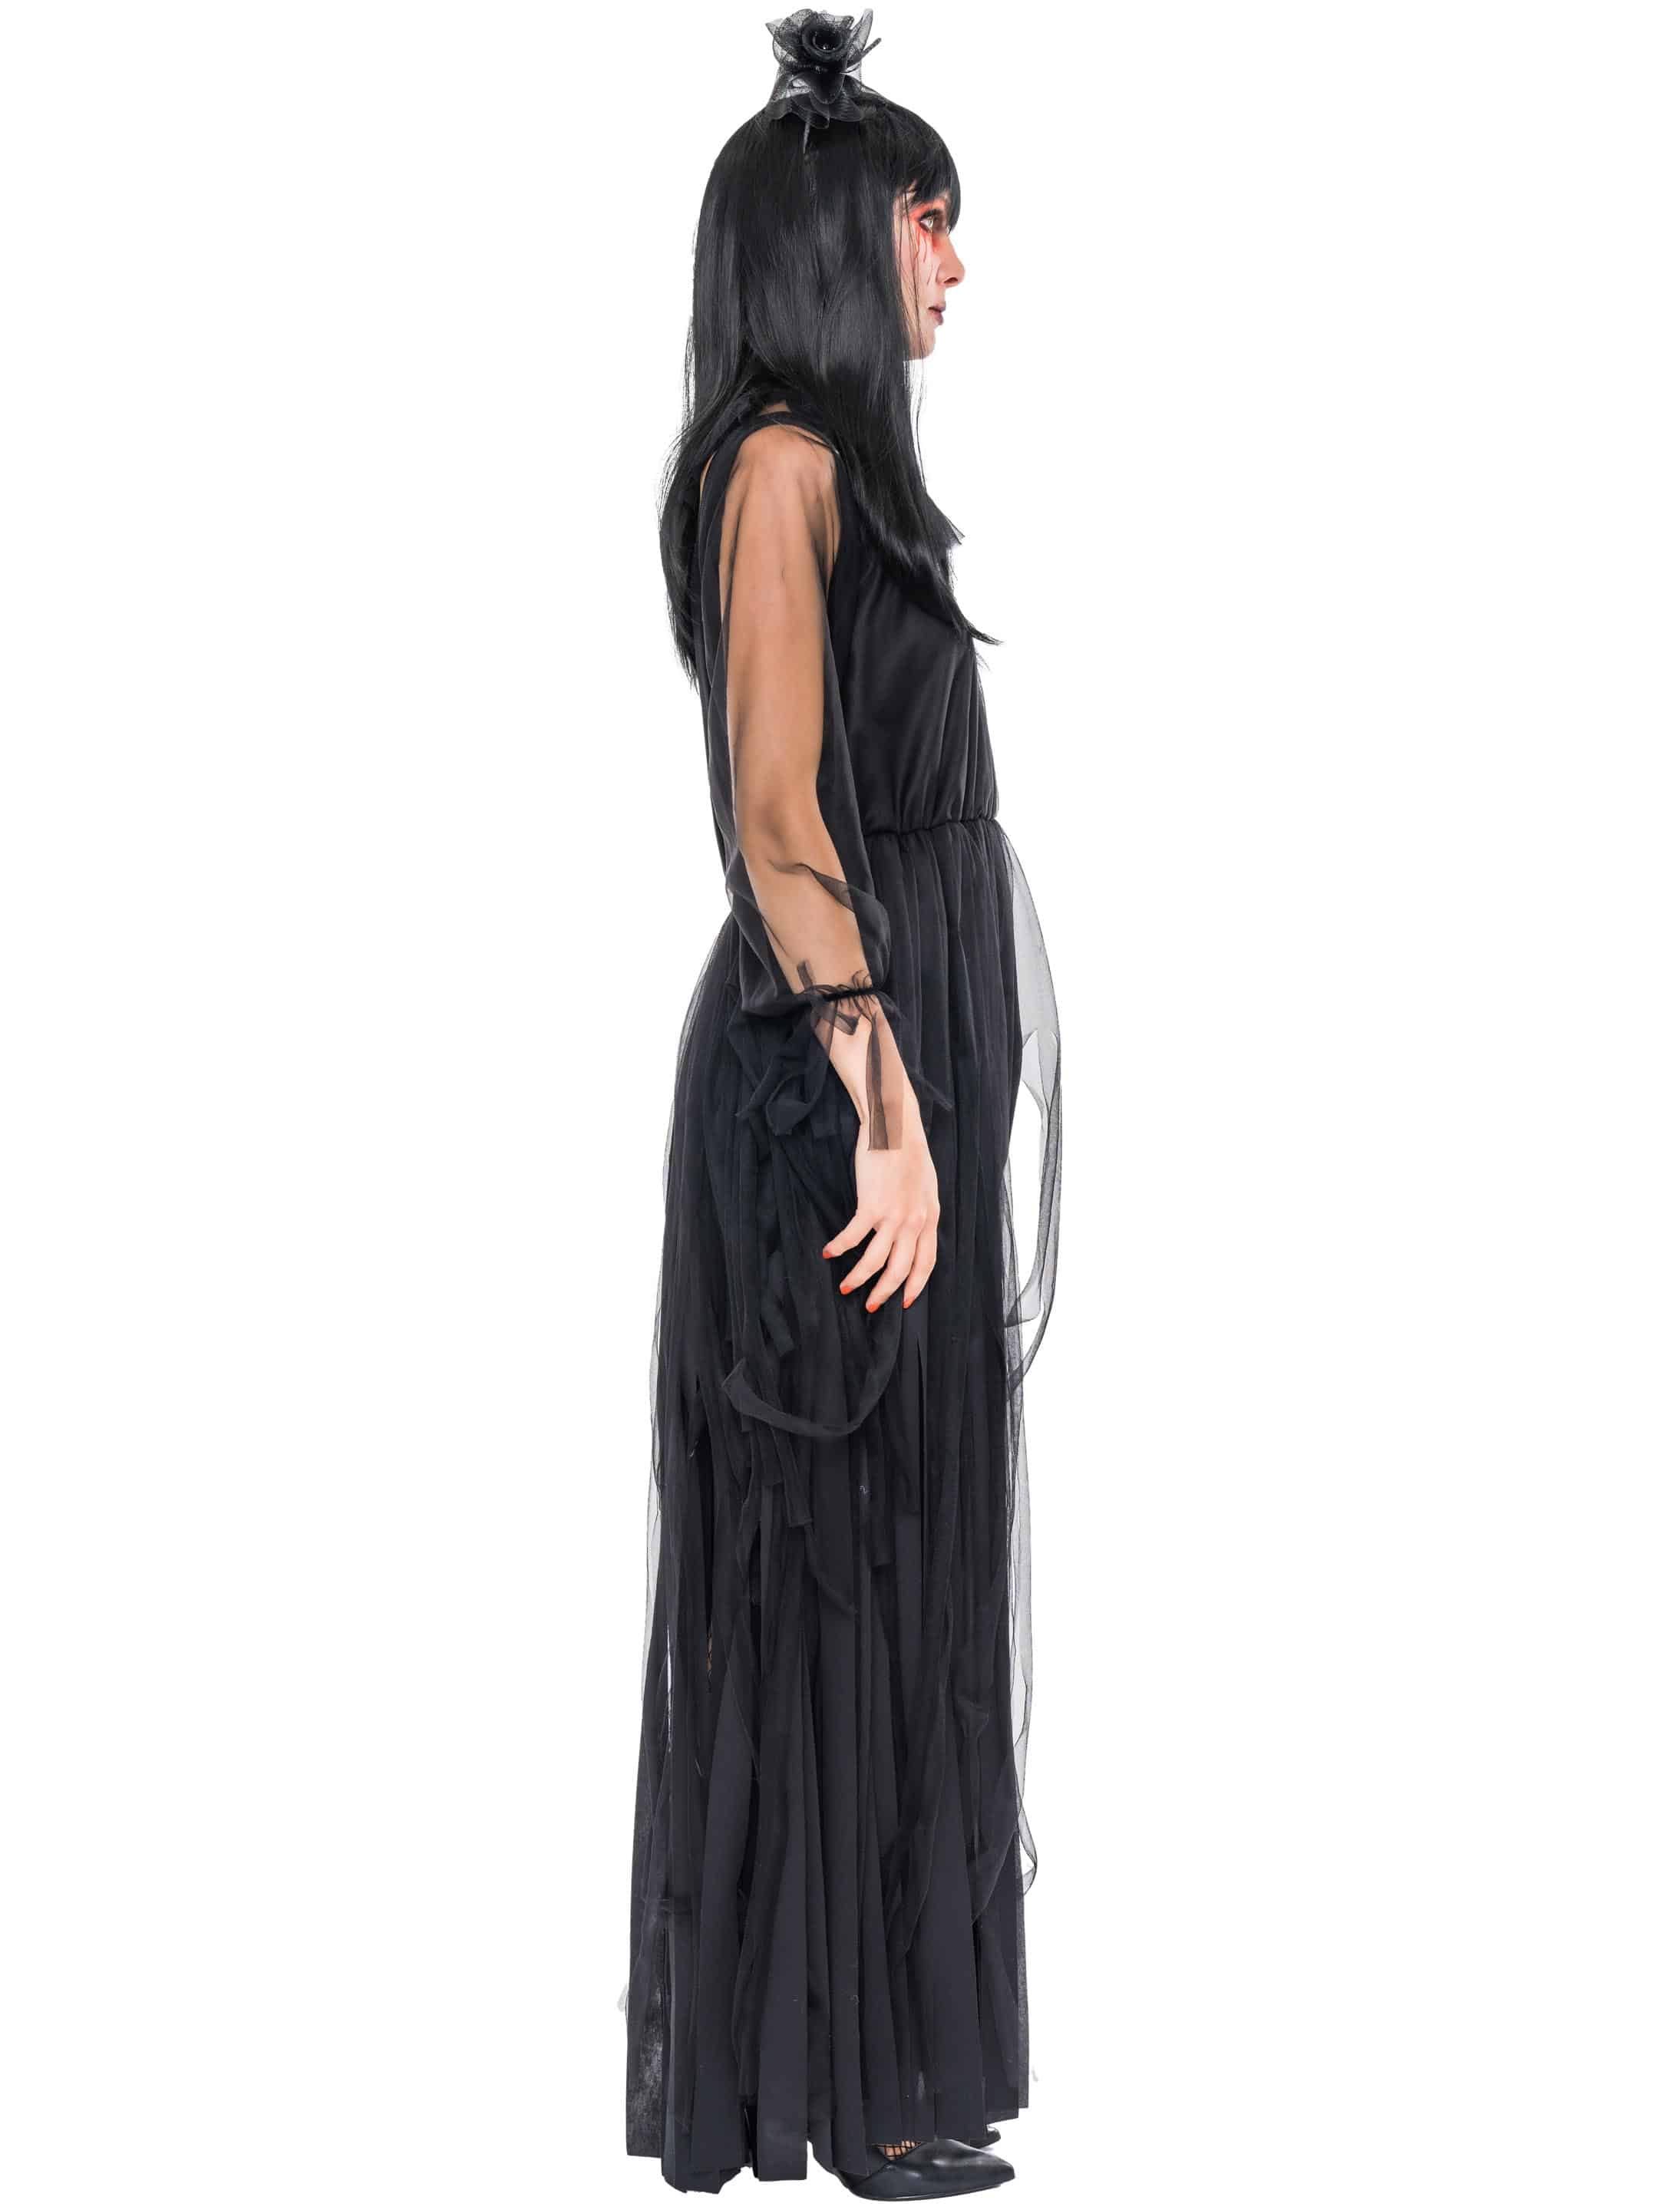 Kleid mit Tüllfransen Damen schwarz S-M